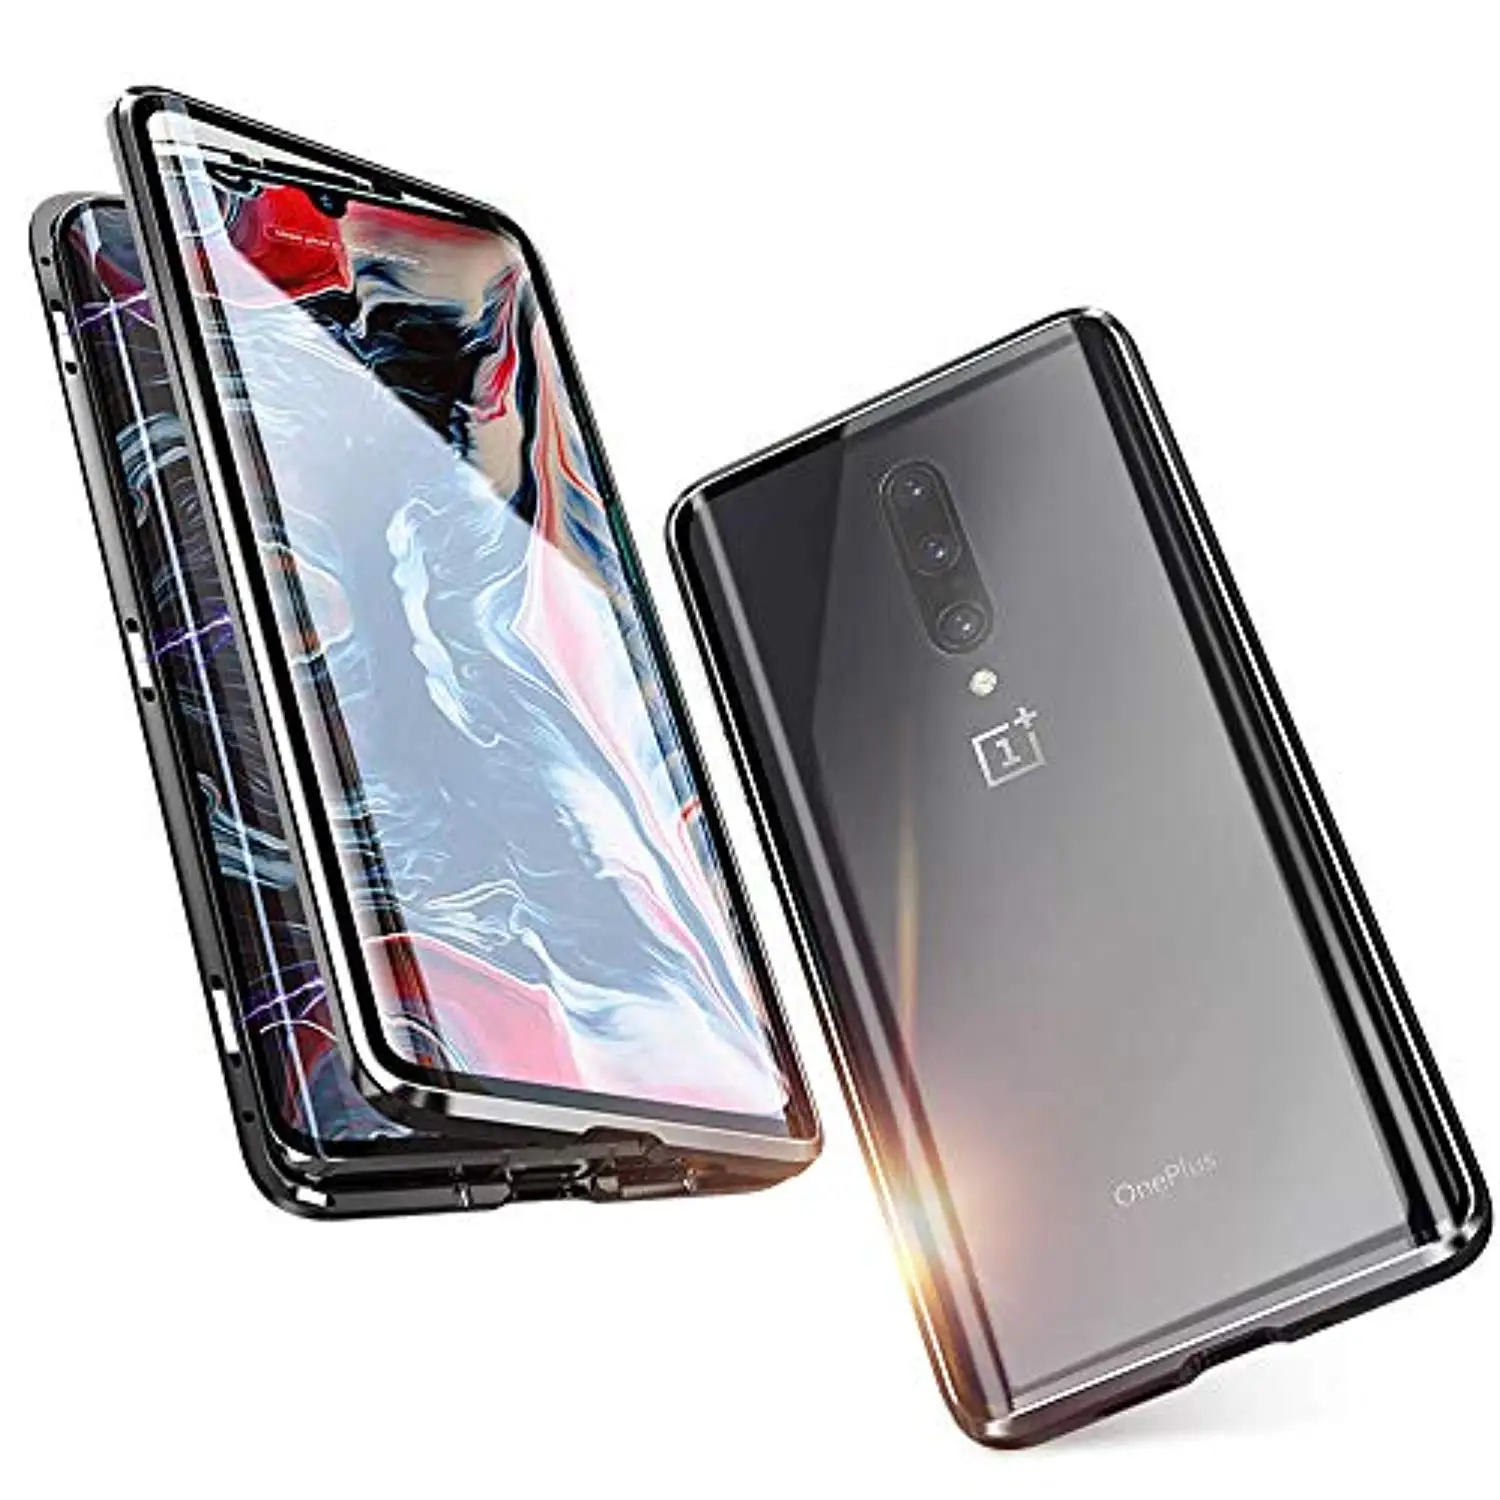 360 Полный Магнитный чехол на заднюю панель из стекла для XiaoMi 9 SE 9T Pro 8 A3 A2 6X RedMi Note 7 K20 7A чехол для телефона металлический бампер жесткий чехол - Цвет: Black